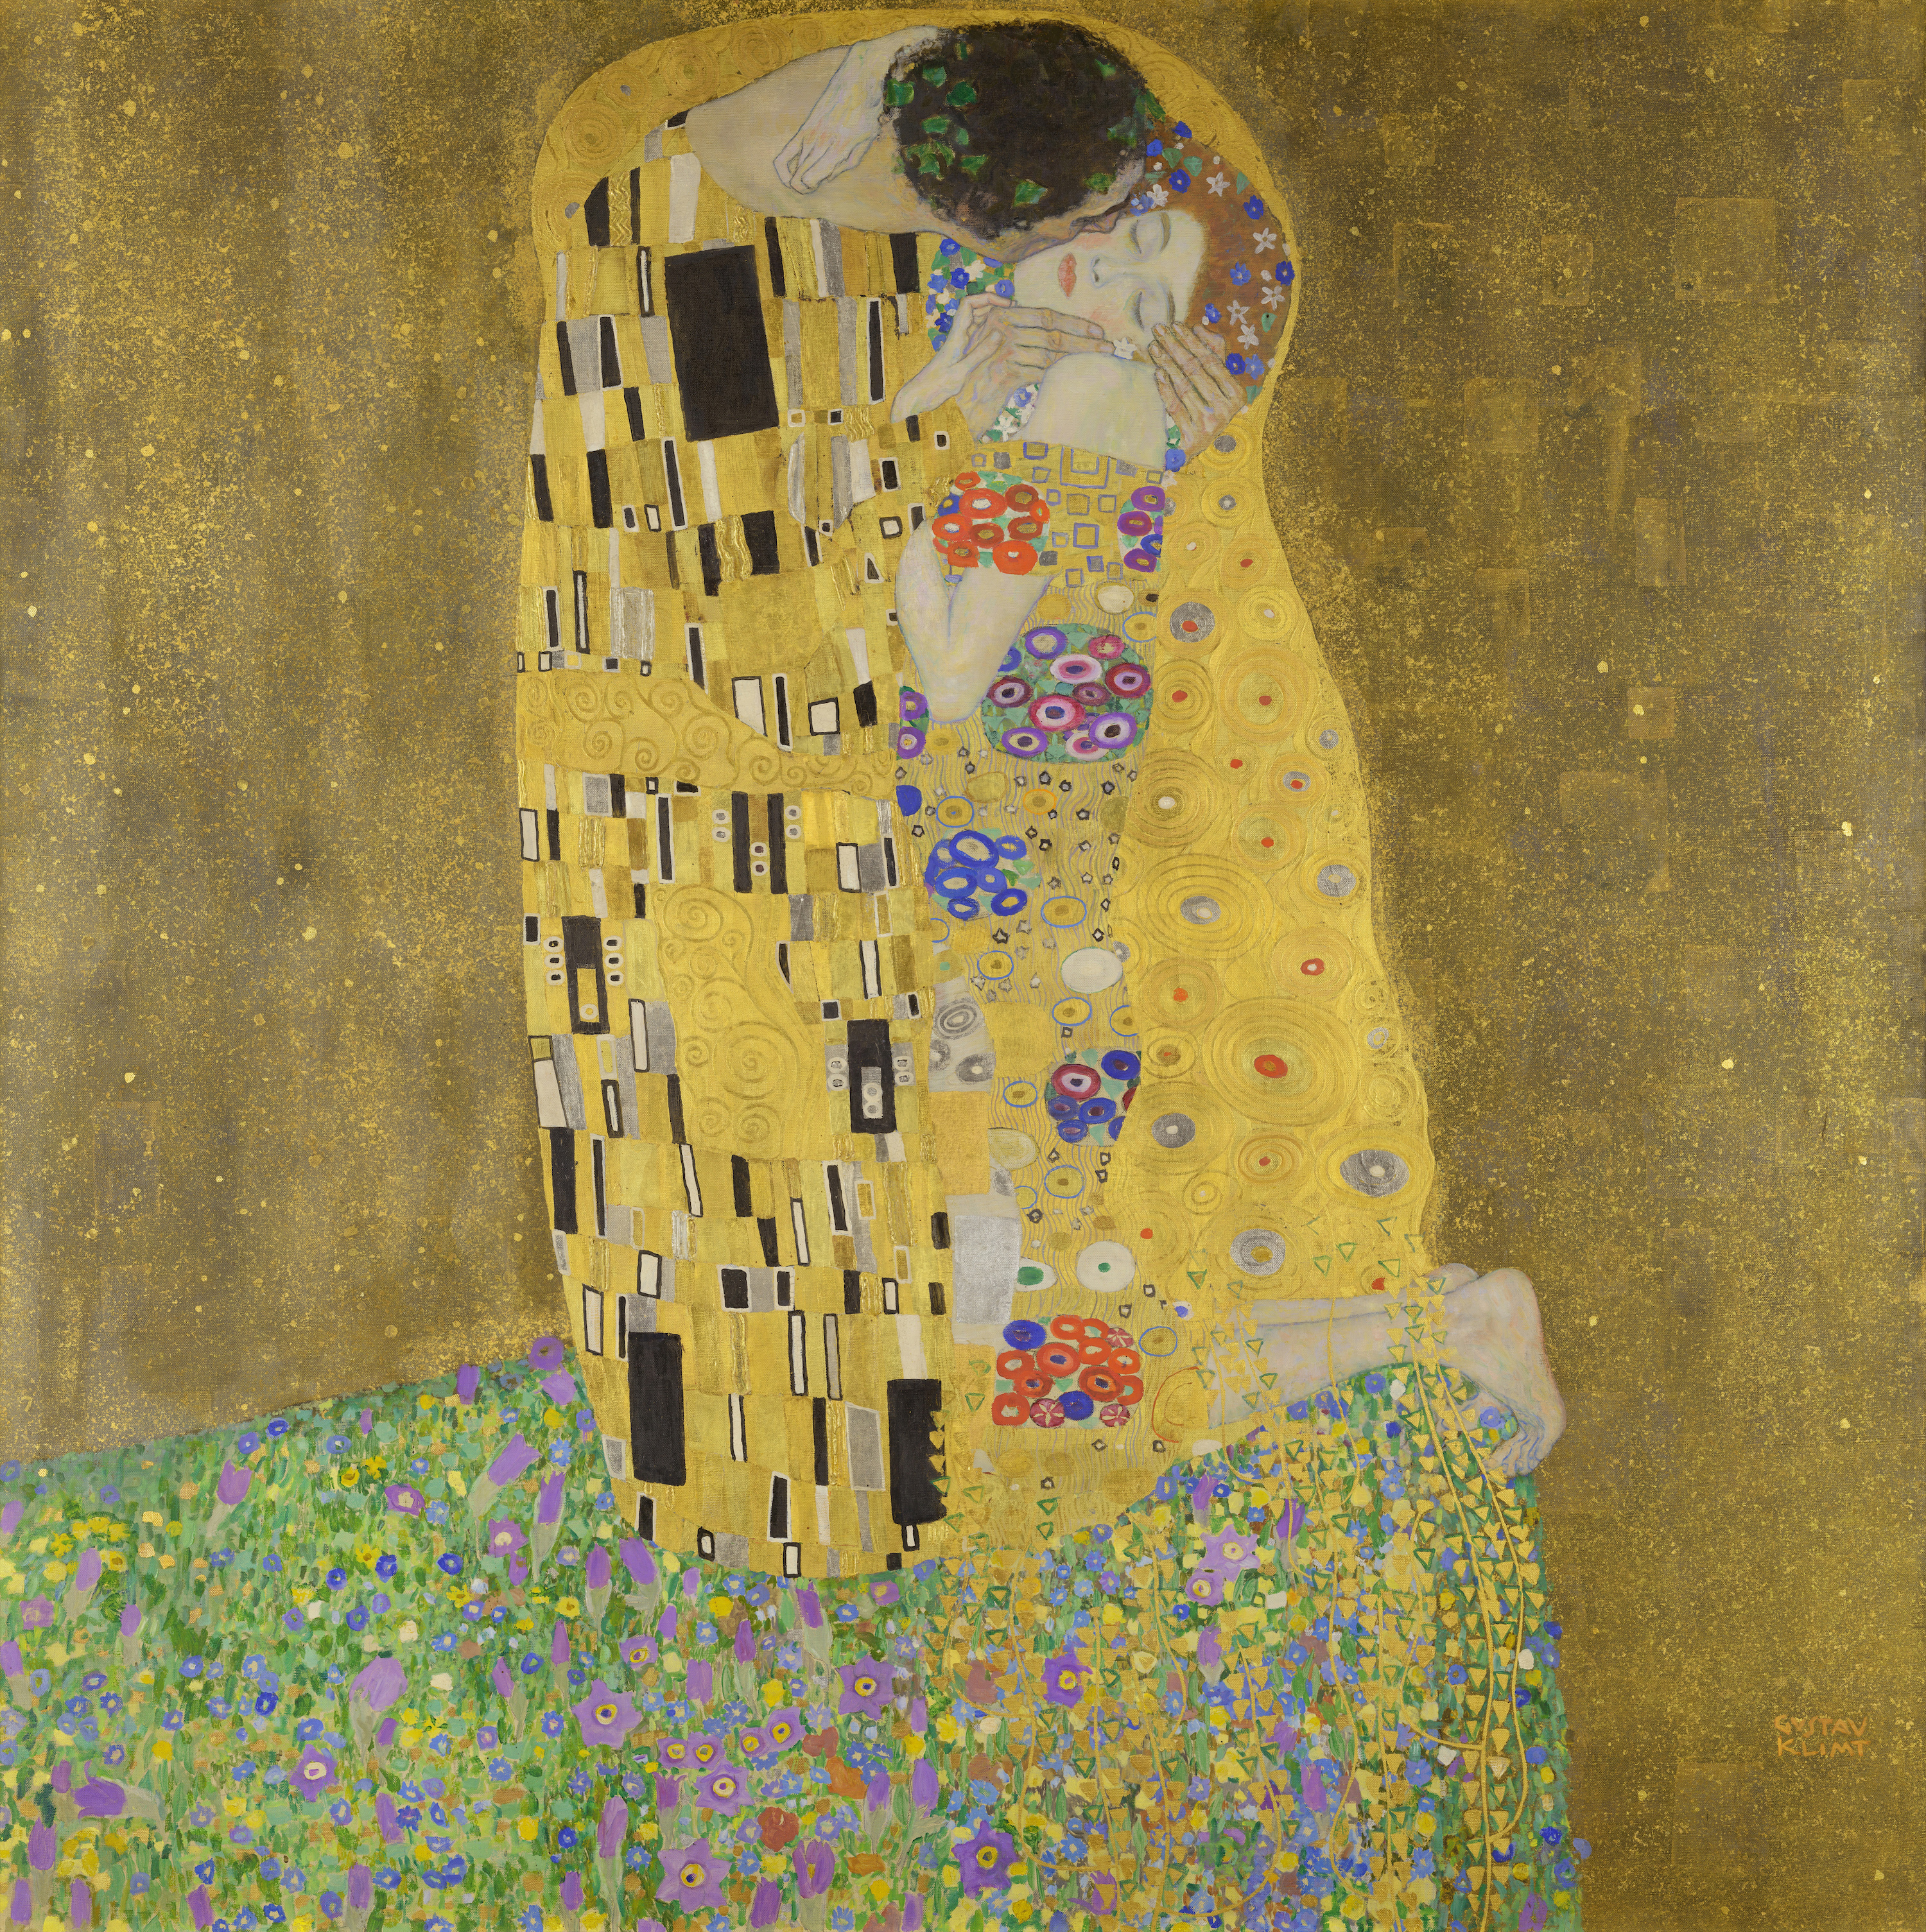 El beso by Gustav Klimt - 1908-1909 - 180 x 180 cm Österreichische Galerie Belvedere